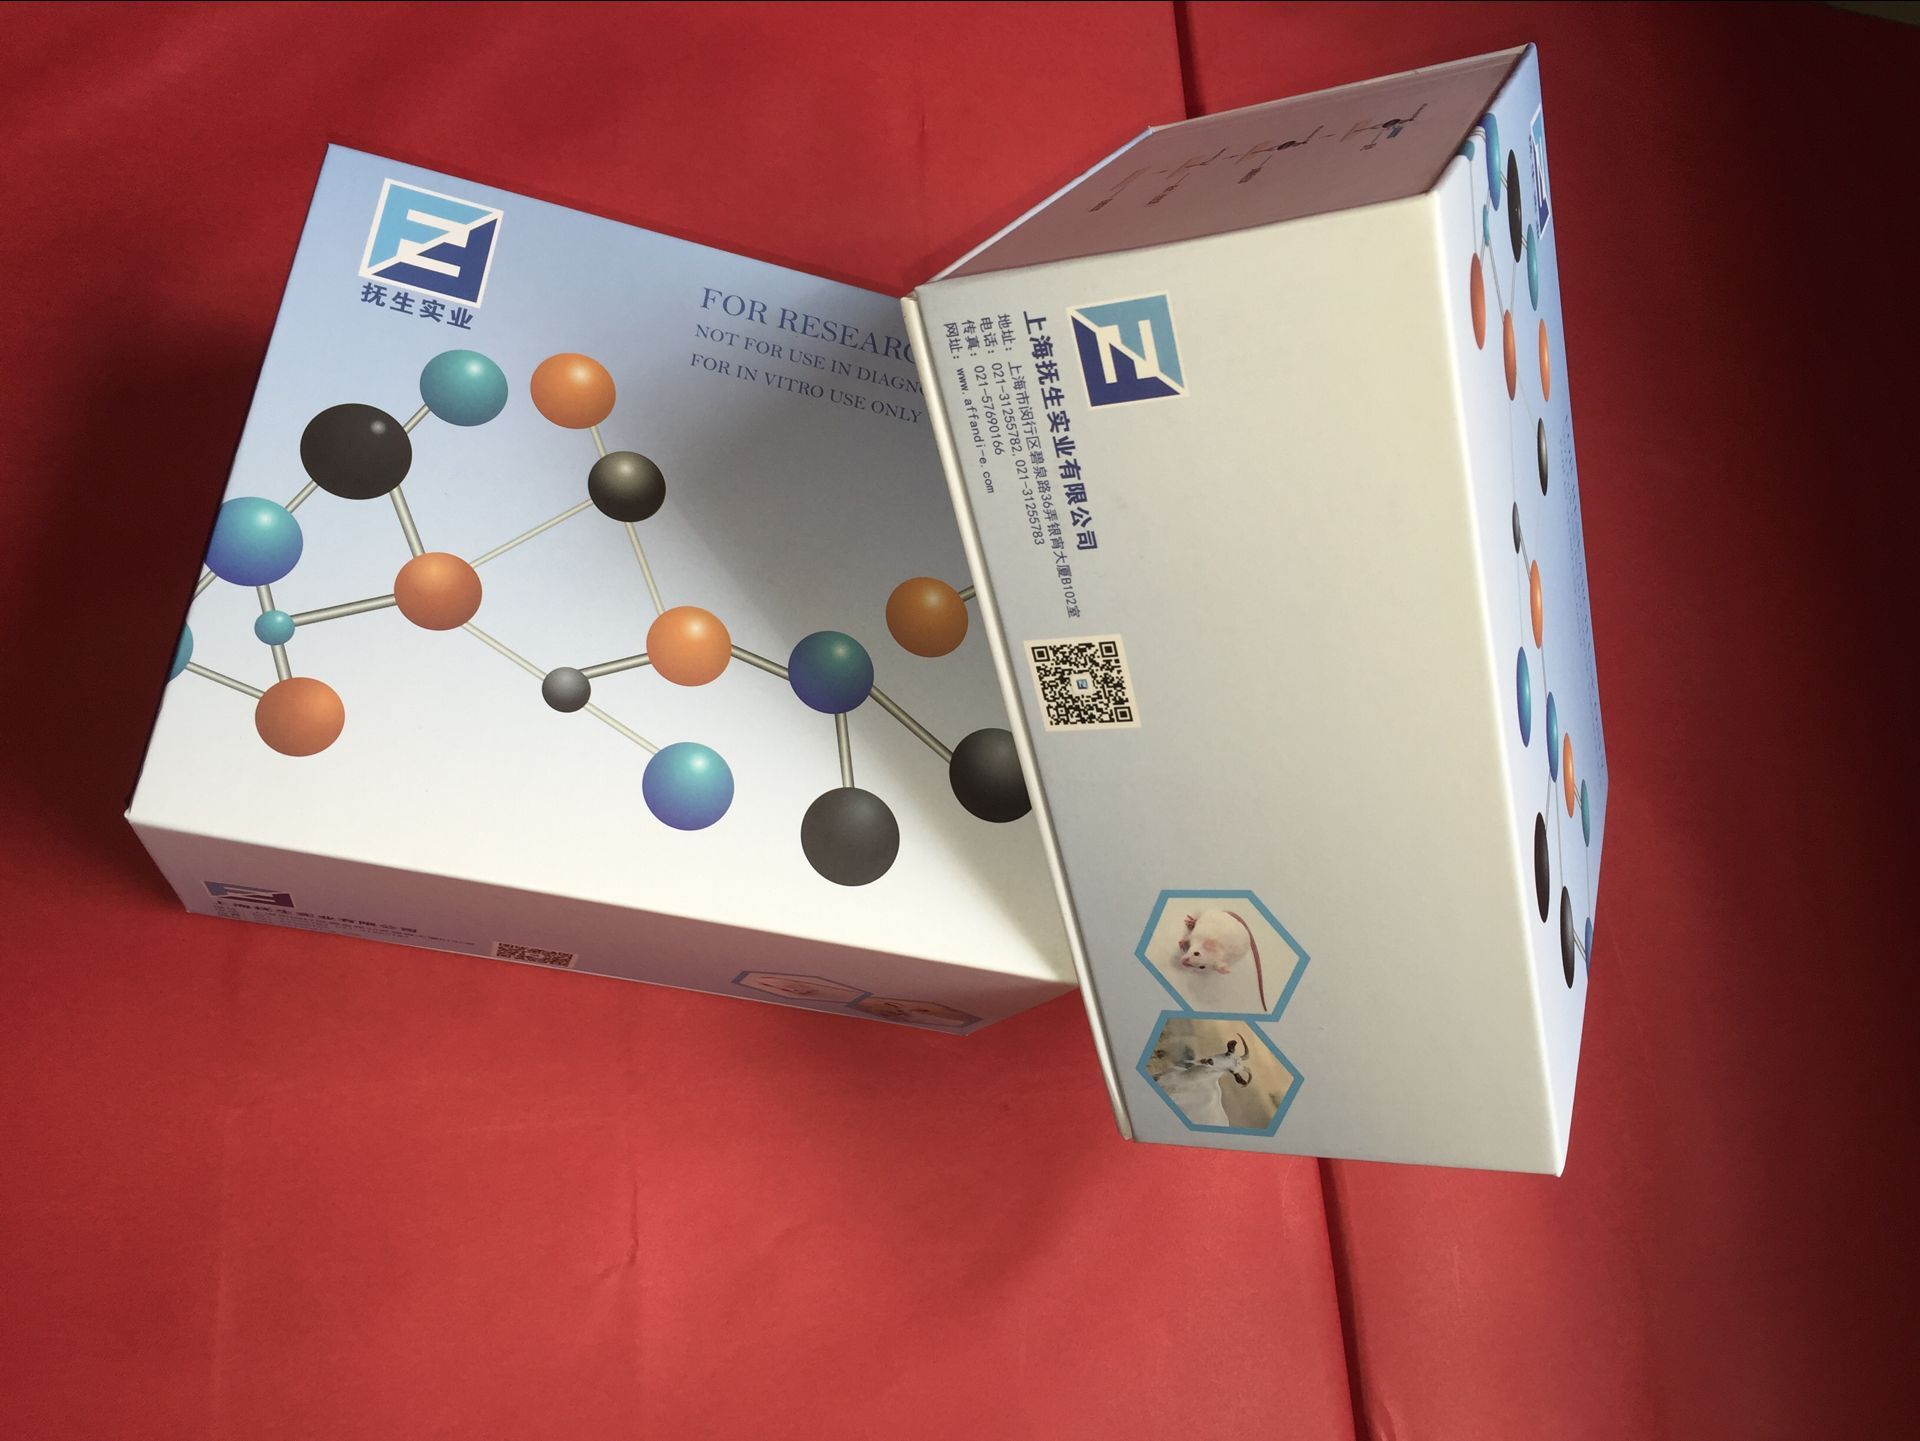 人AP-5复合物β亚基(PP1030)elisa检测试剂盒图片